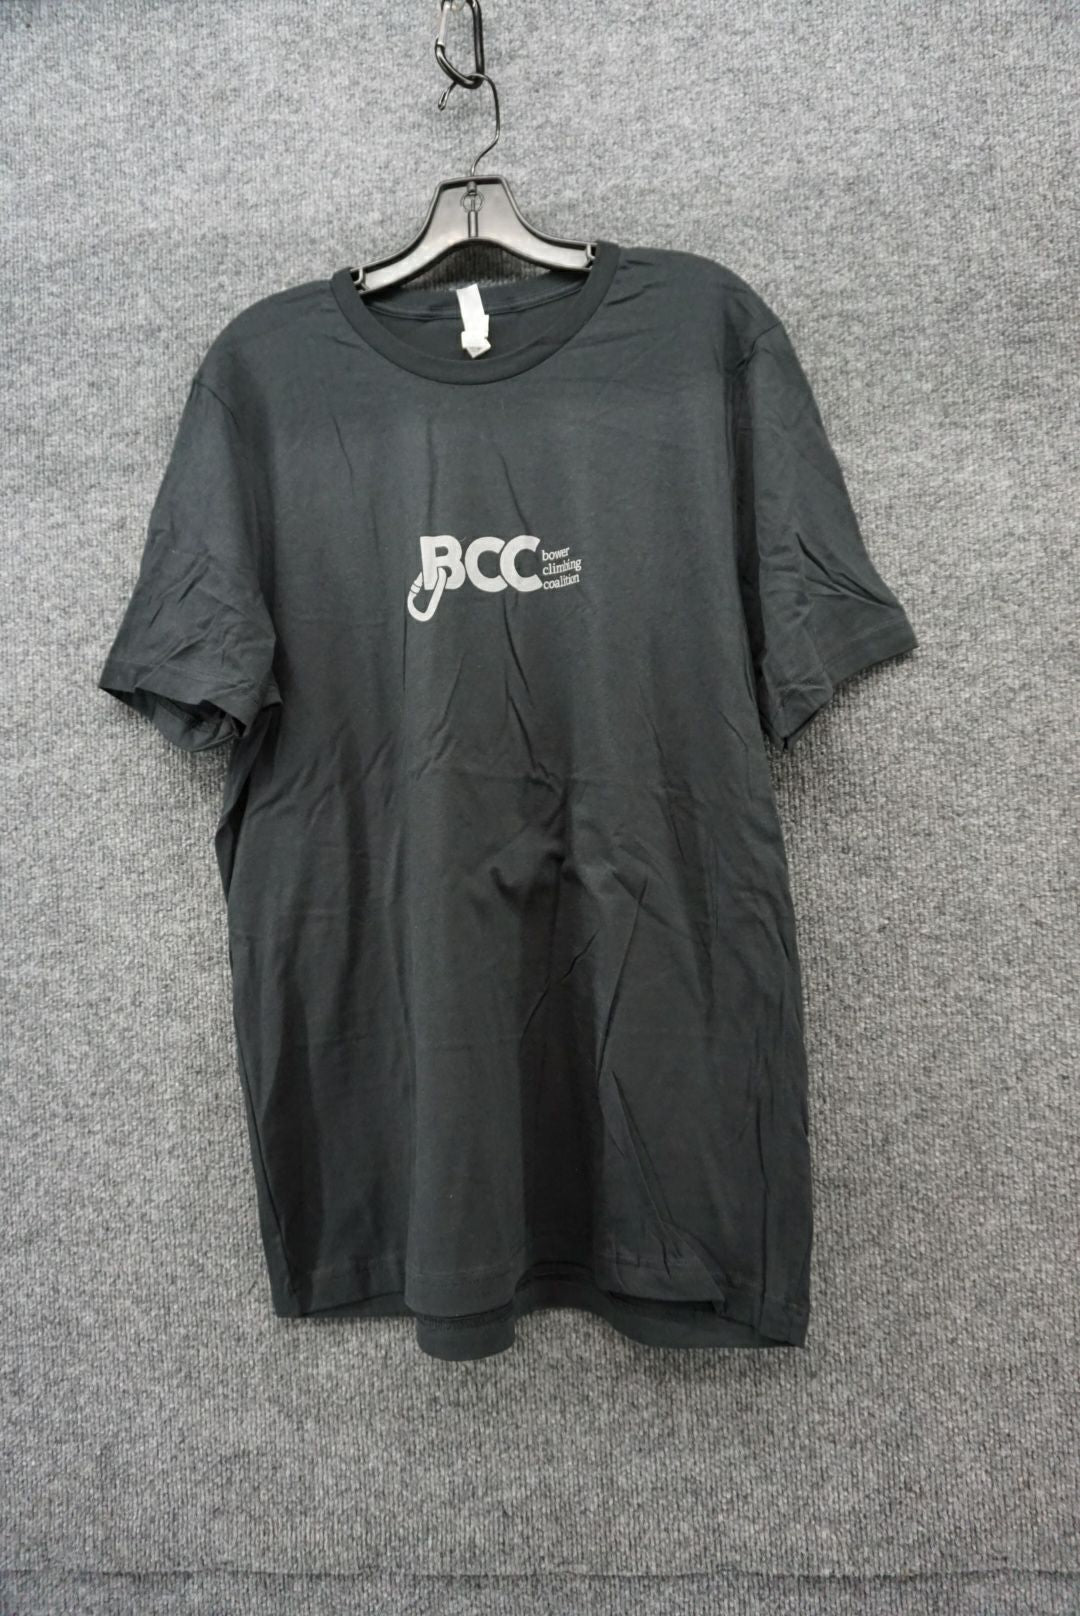 BCC Size XL Men's S/S Shirt